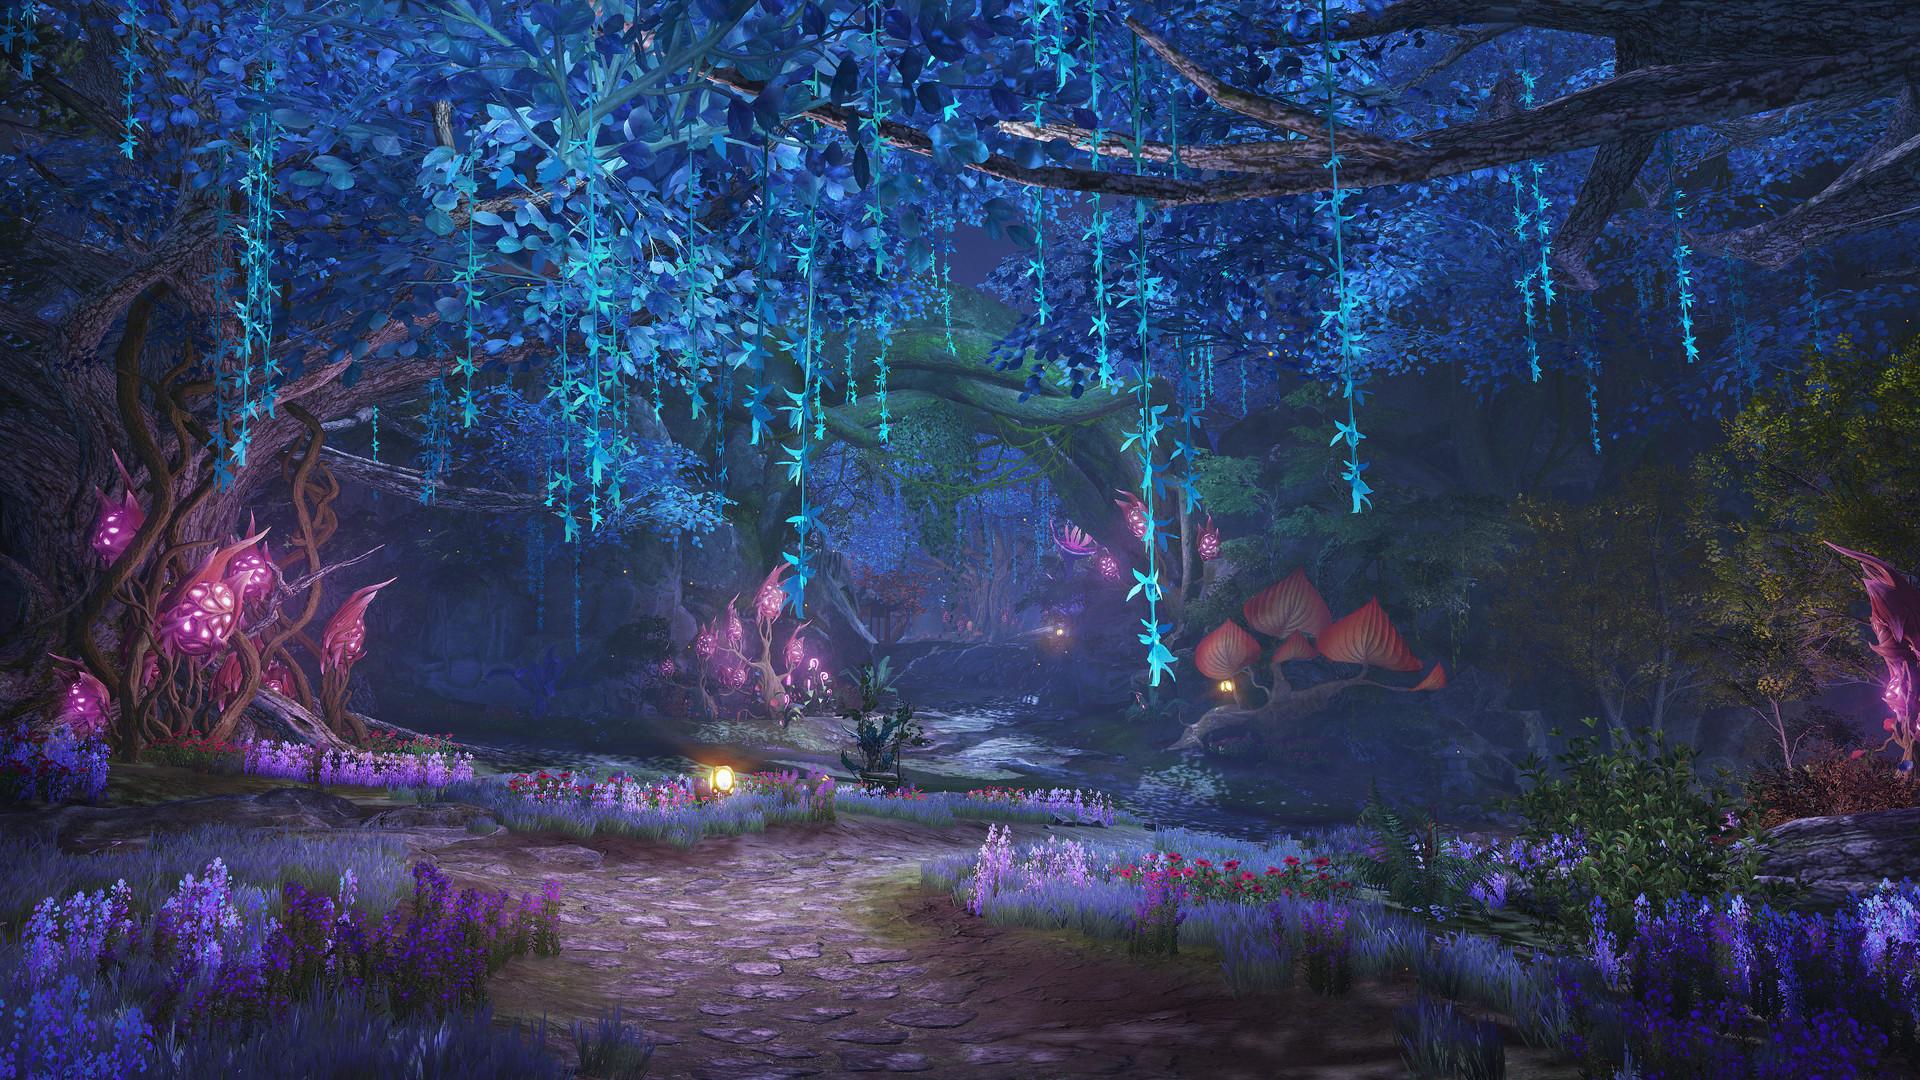 Screenshot №4 from game Swords of Legends Online